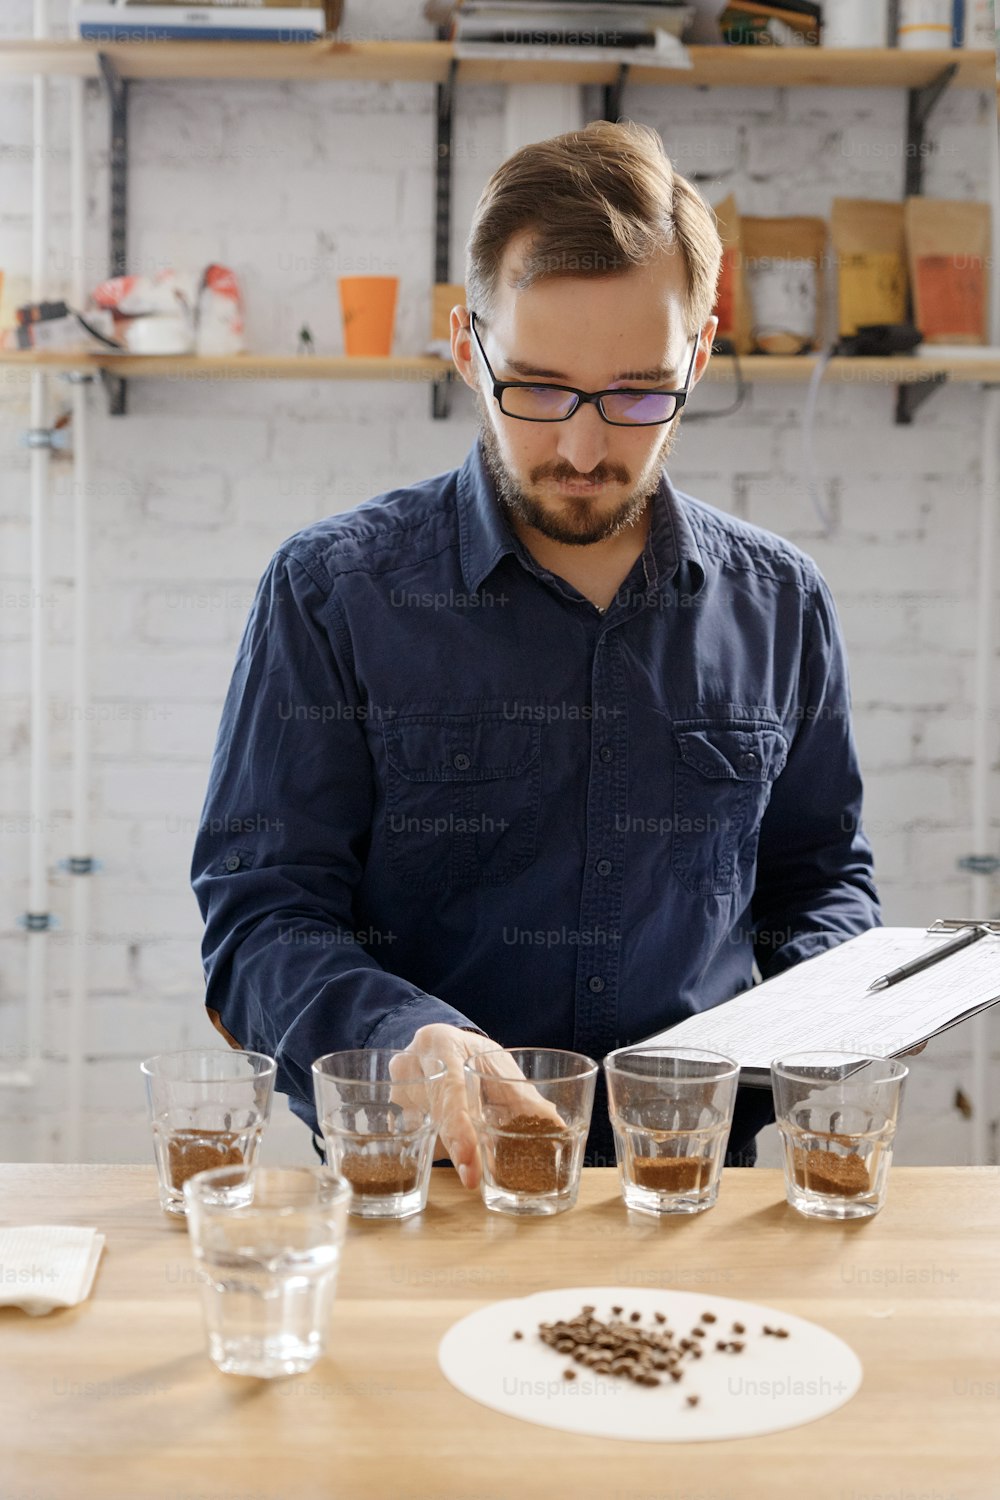 커피 커핑 검사에서 컵에 담긴 이상한 분쇄 커피 냄새를 맡는 남자의 초상화. 그는 유리컵이 있는 줄 앞 흰 벽 근처에 서 있다